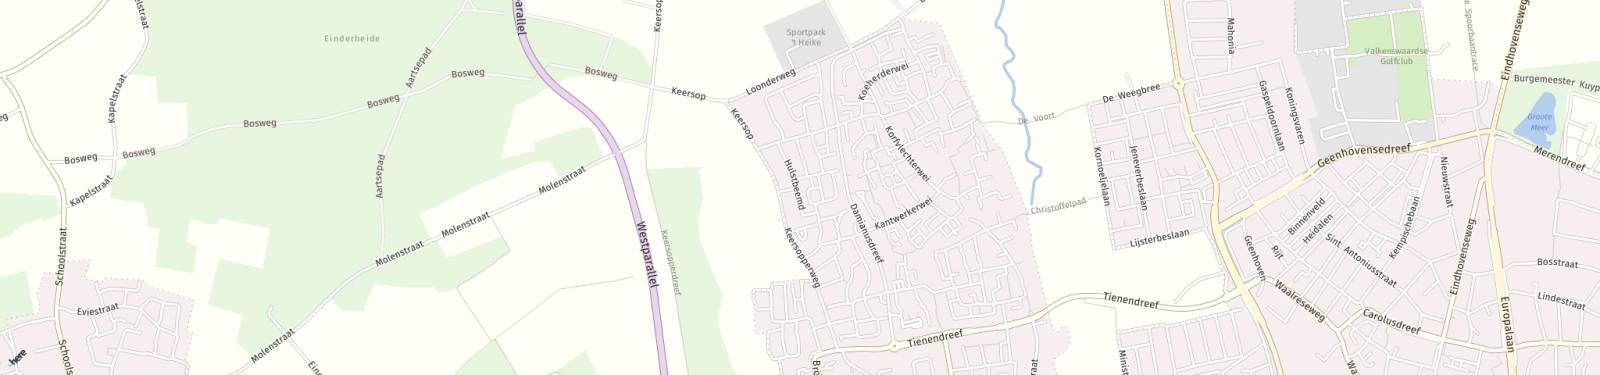 Kaart met locatie Huurwoning Hulstbeemd